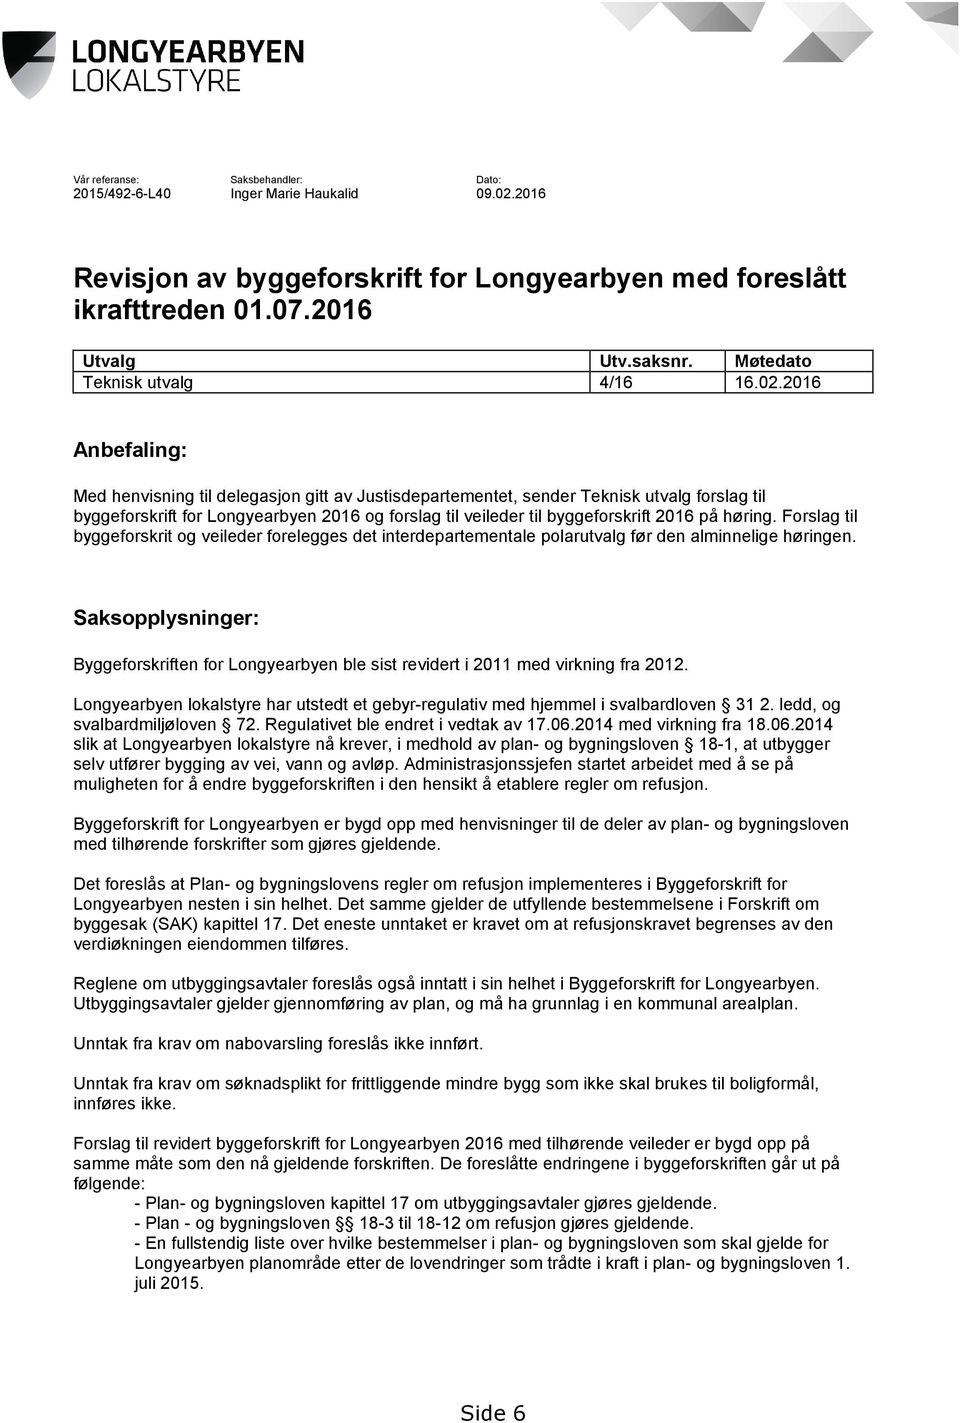 2016 Anbefaling: Med henvisning til delegasjon gitt av Justisdepartementet, sender Teknisk utvalg forslag til byggeforskrift for Longyearbyen 2016 og forslag til veileder til byggeforskrift 2016 på